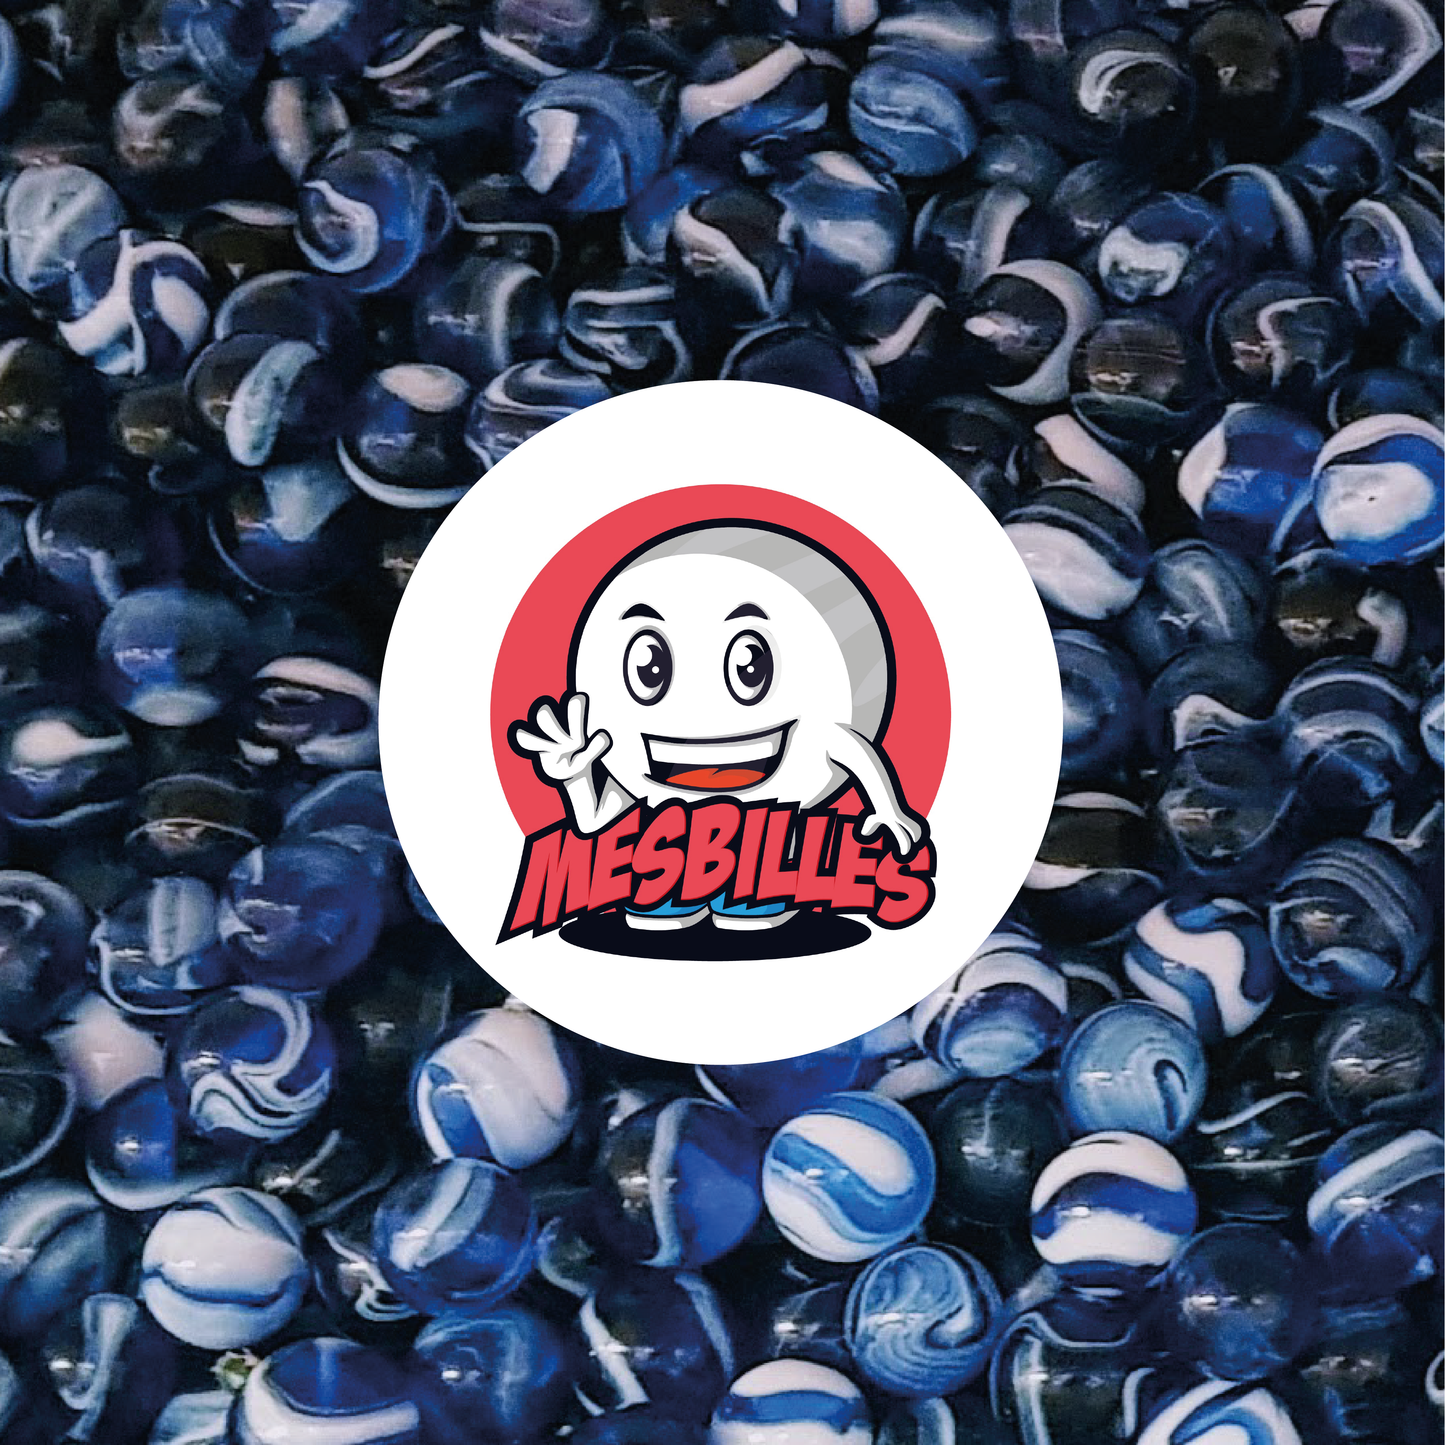 Image de la Mascotte MesBilles entourée de Billes Spot 50 mm - Verre Translucide Bleu strié de Blanc